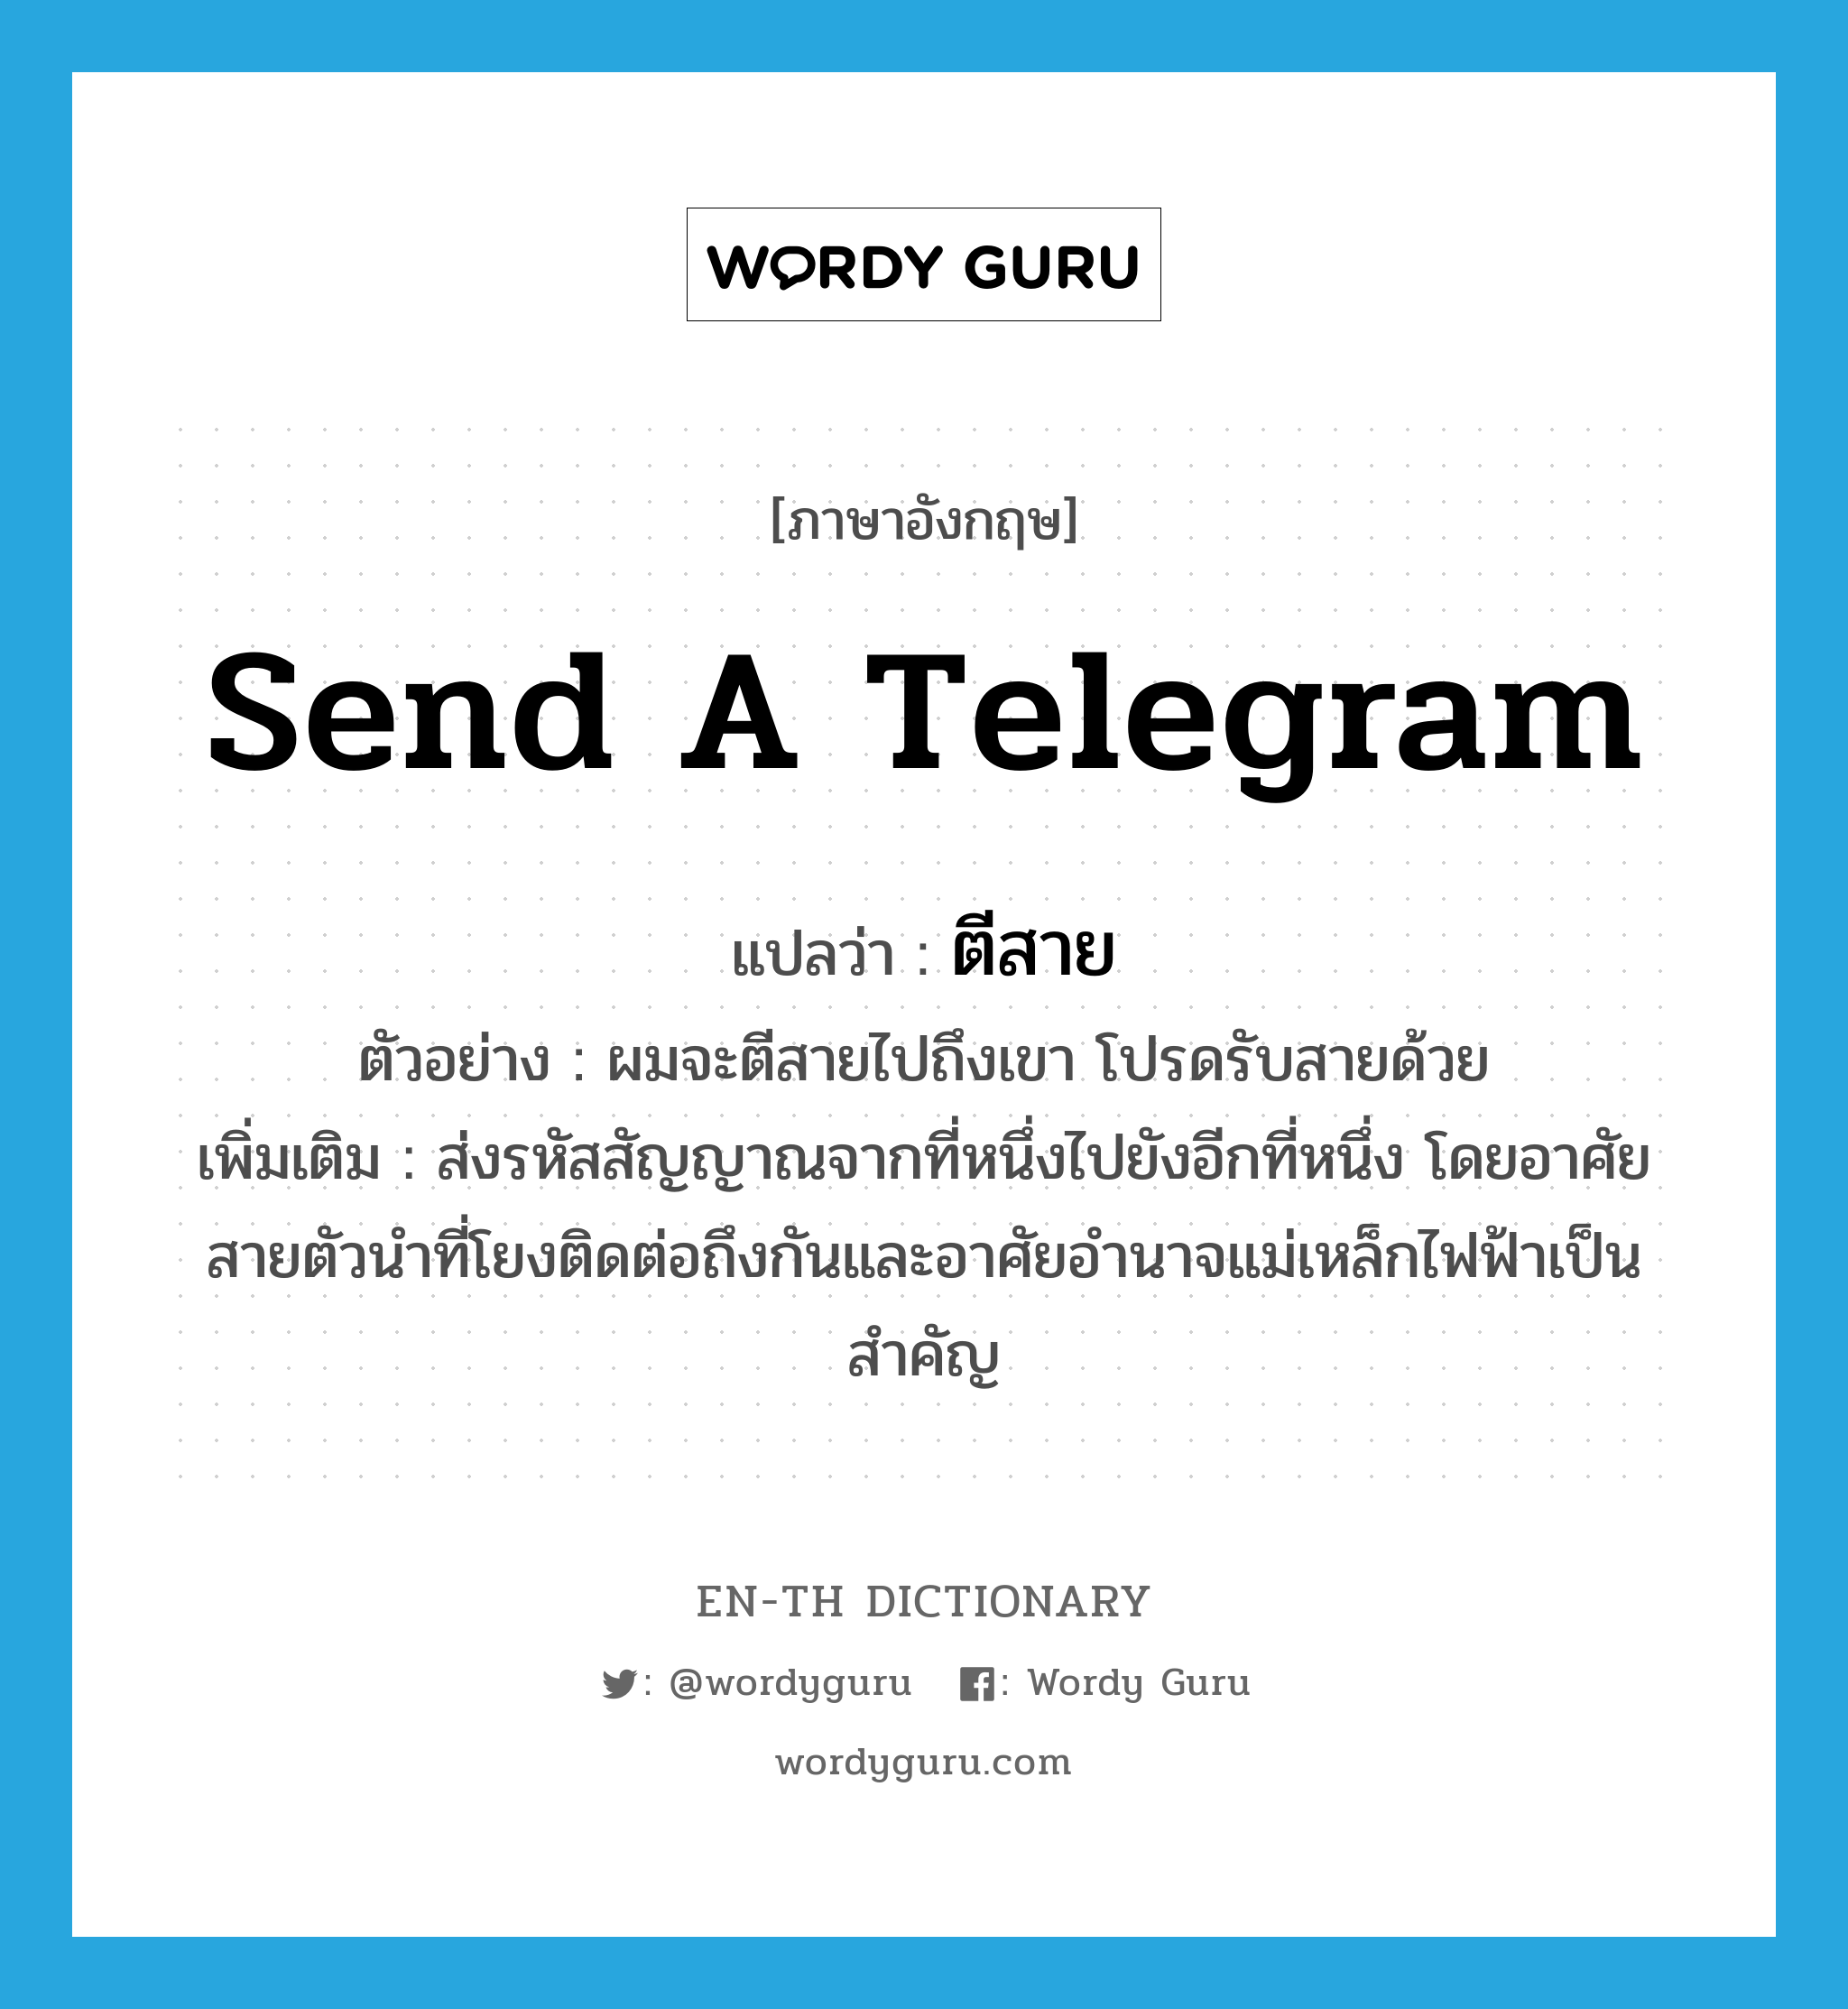 send a telegram แปลว่า?, คำศัพท์ภาษาอังกฤษ send a telegram แปลว่า ตีสาย ประเภท V ตัวอย่าง ผมจะตีสายไปถึงเขา โปรดรับสายด้วย เพิ่มเติม ส่งรหัสสัญญาณจากที่หนึ่งไปยังอีกที่หนึ่ง โดยอาศัยสายตัวนำที่โยงติดต่อถึงกันและอาศัยอำนาจแม่เหล็กไฟฟ้าเป็นสำคัญ หมวด V